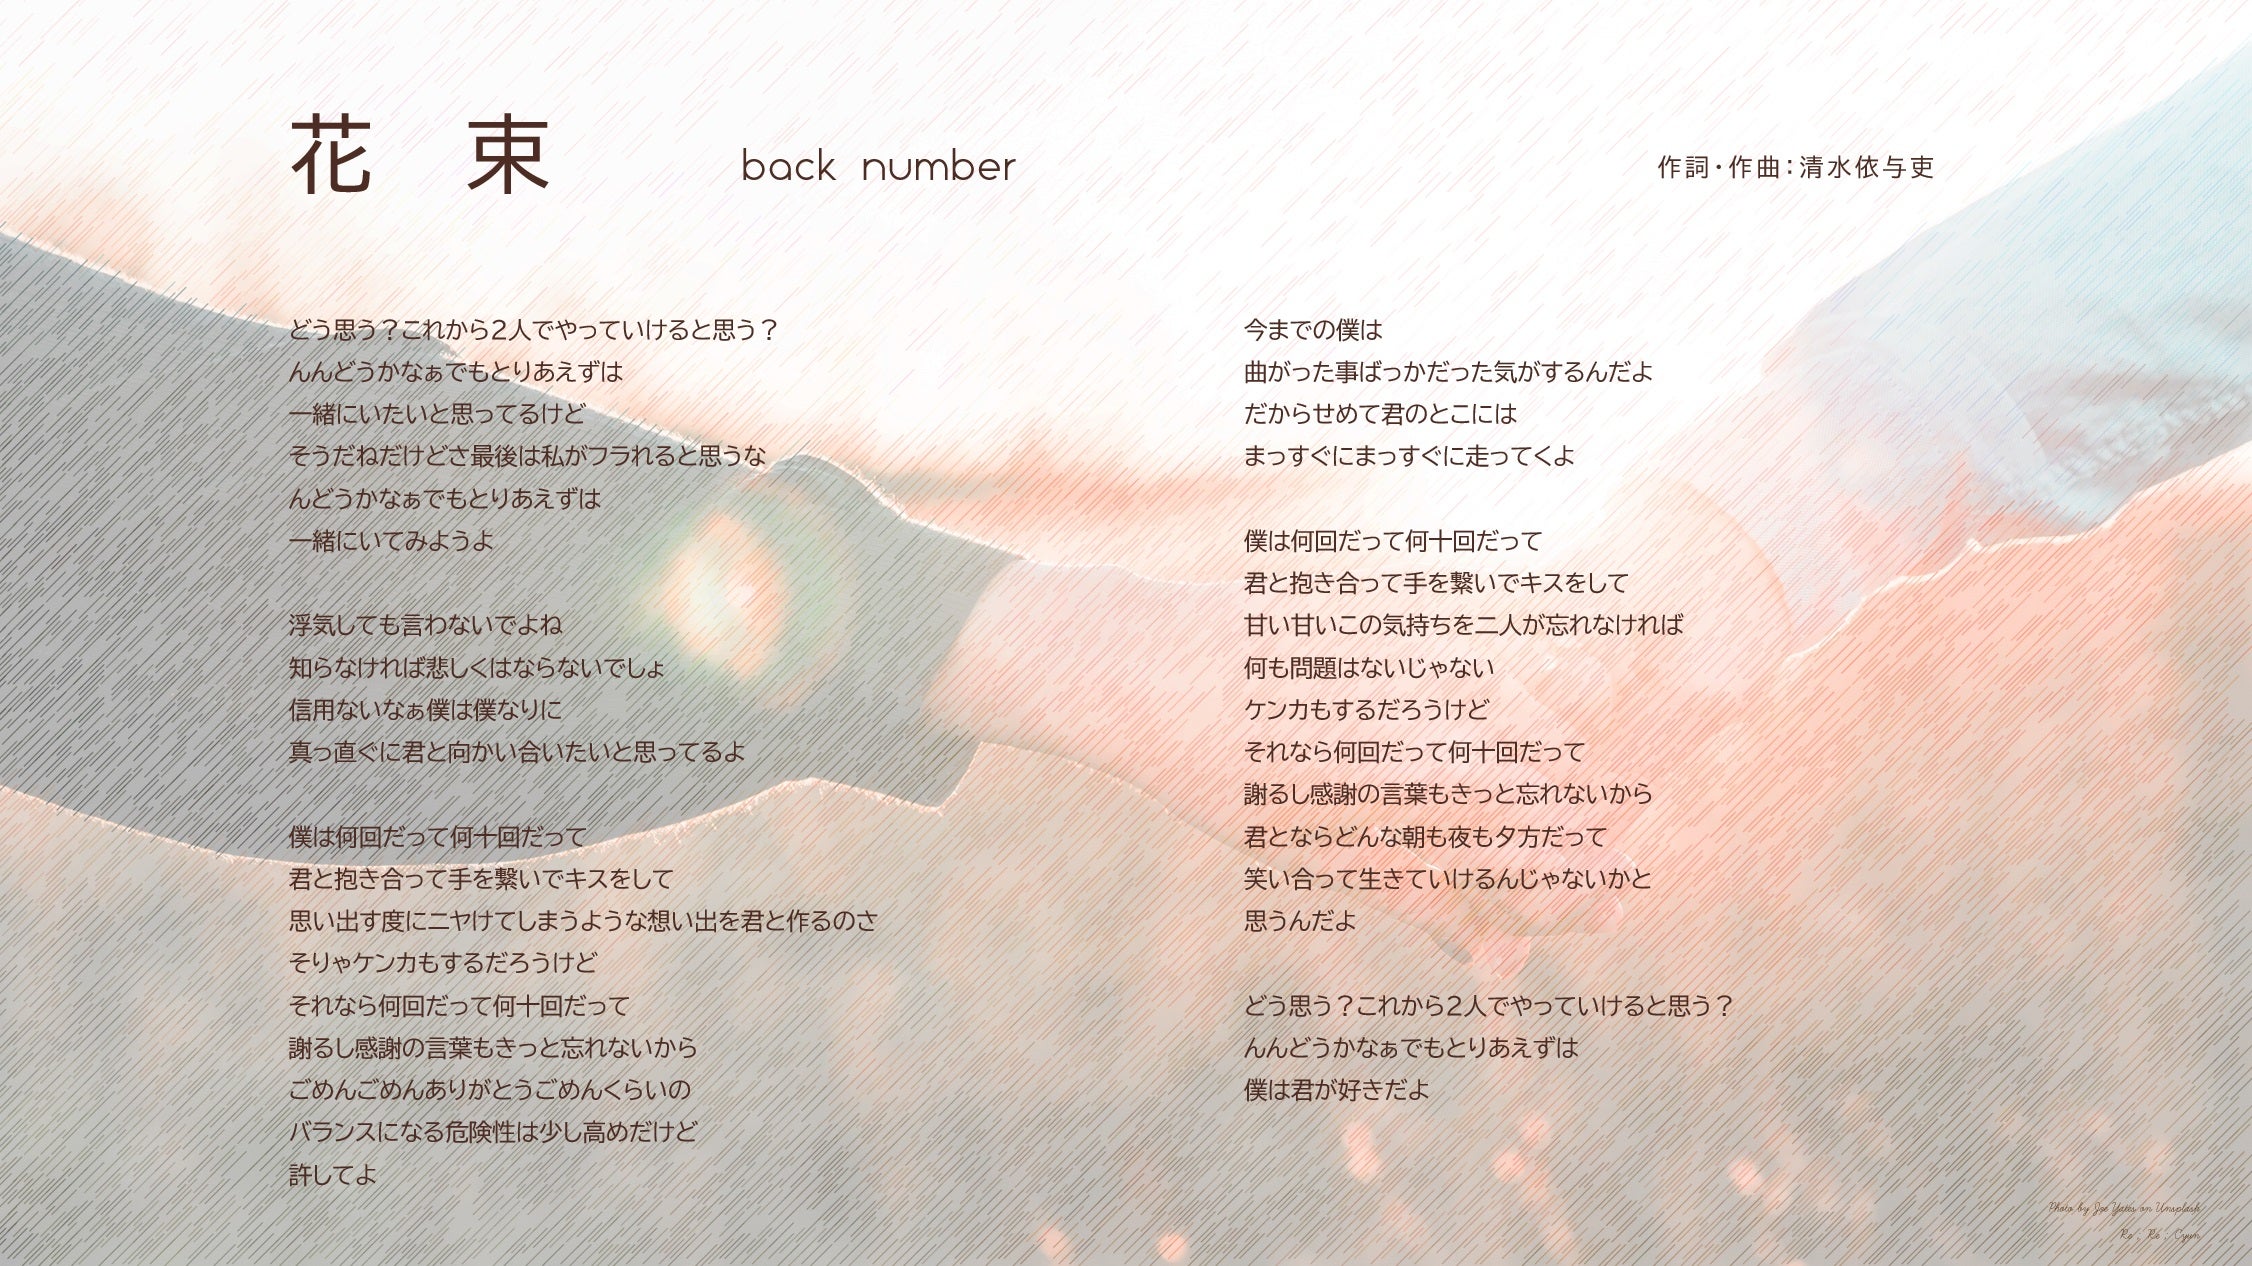 花束 Back Number オリジナル歌詞カード 歌詞画像 Music Cards 音楽と言葉の杜 Lyric Sheet